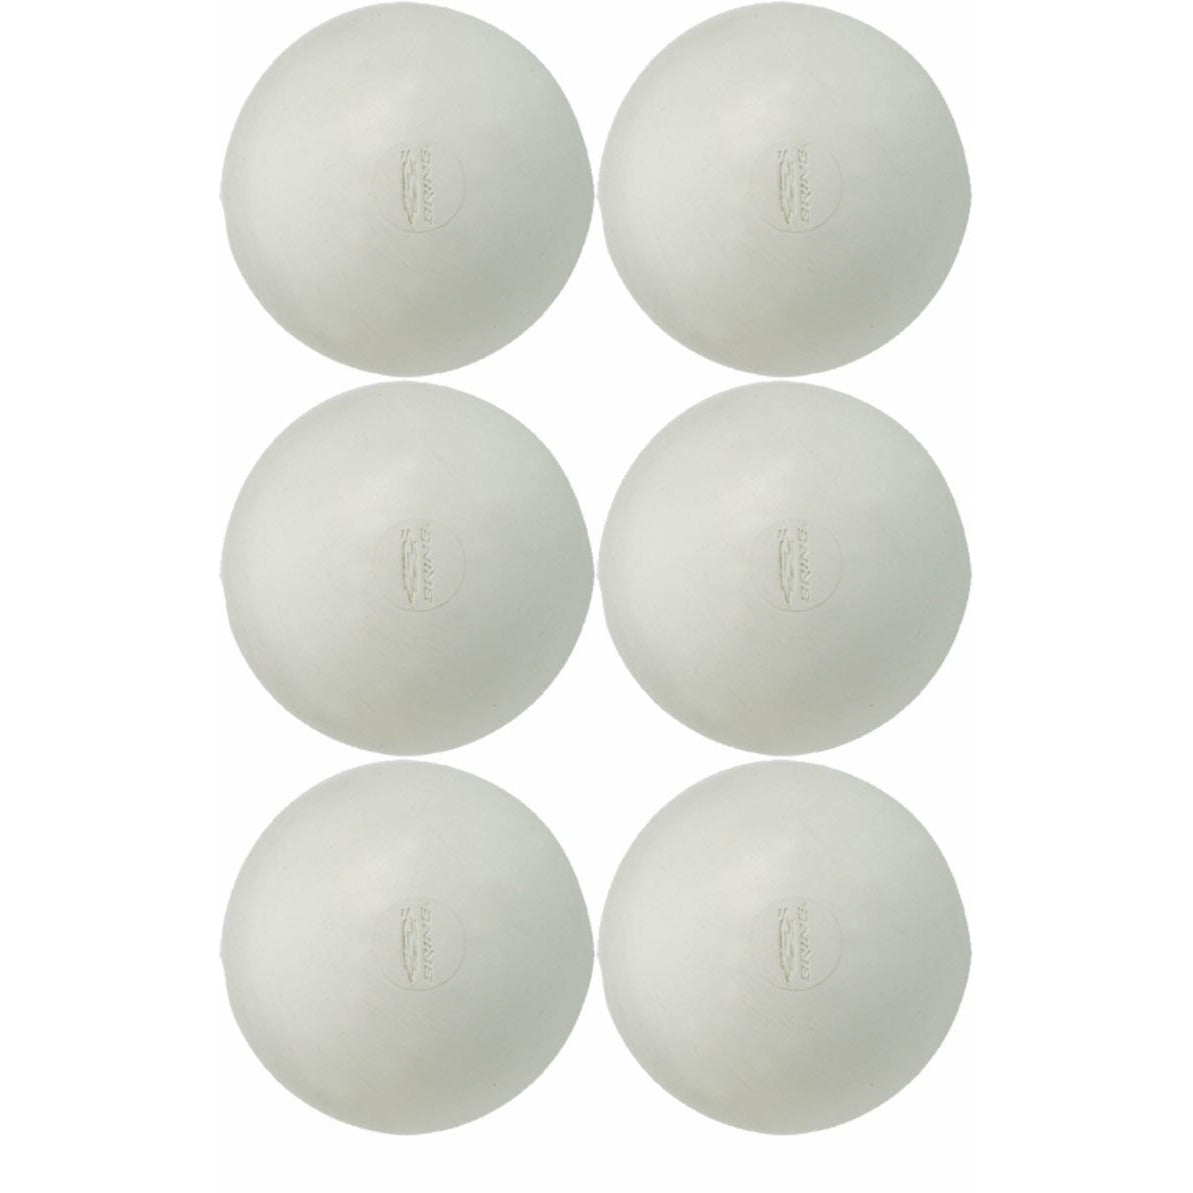 6 Pack of White Lacrosse Balls